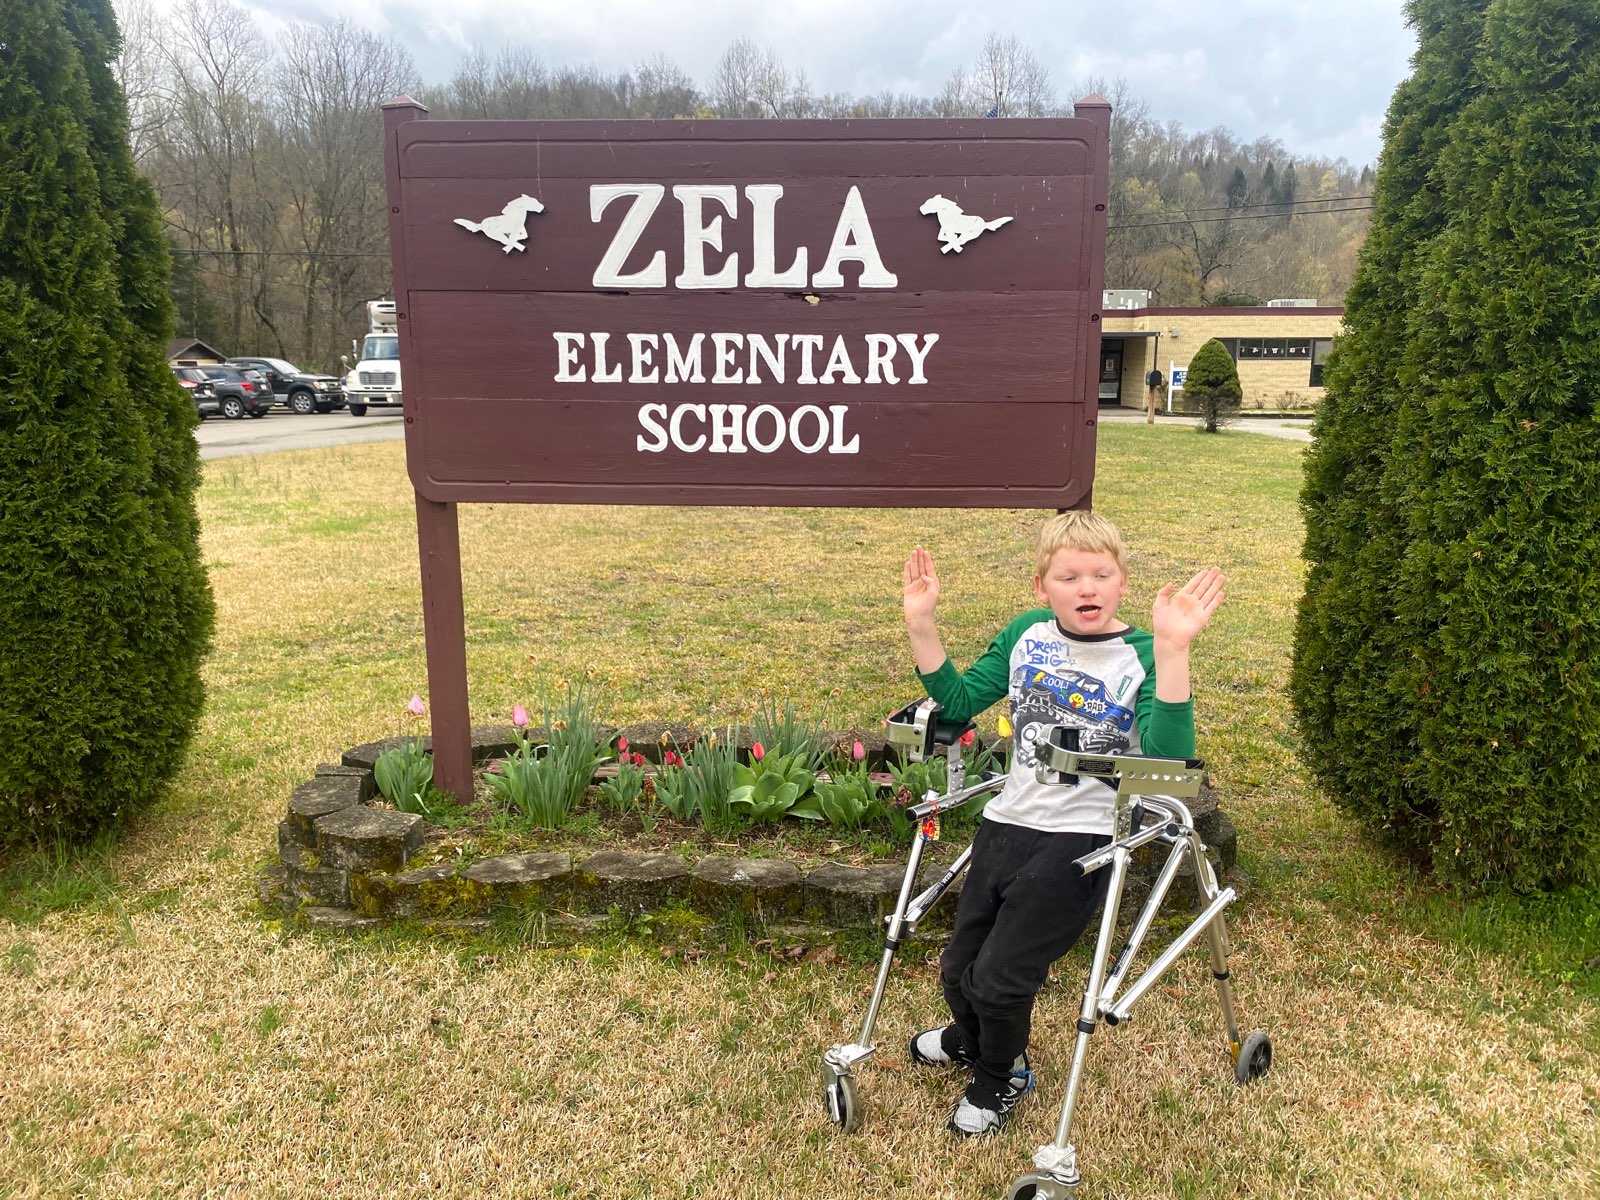 Zela Elementary School